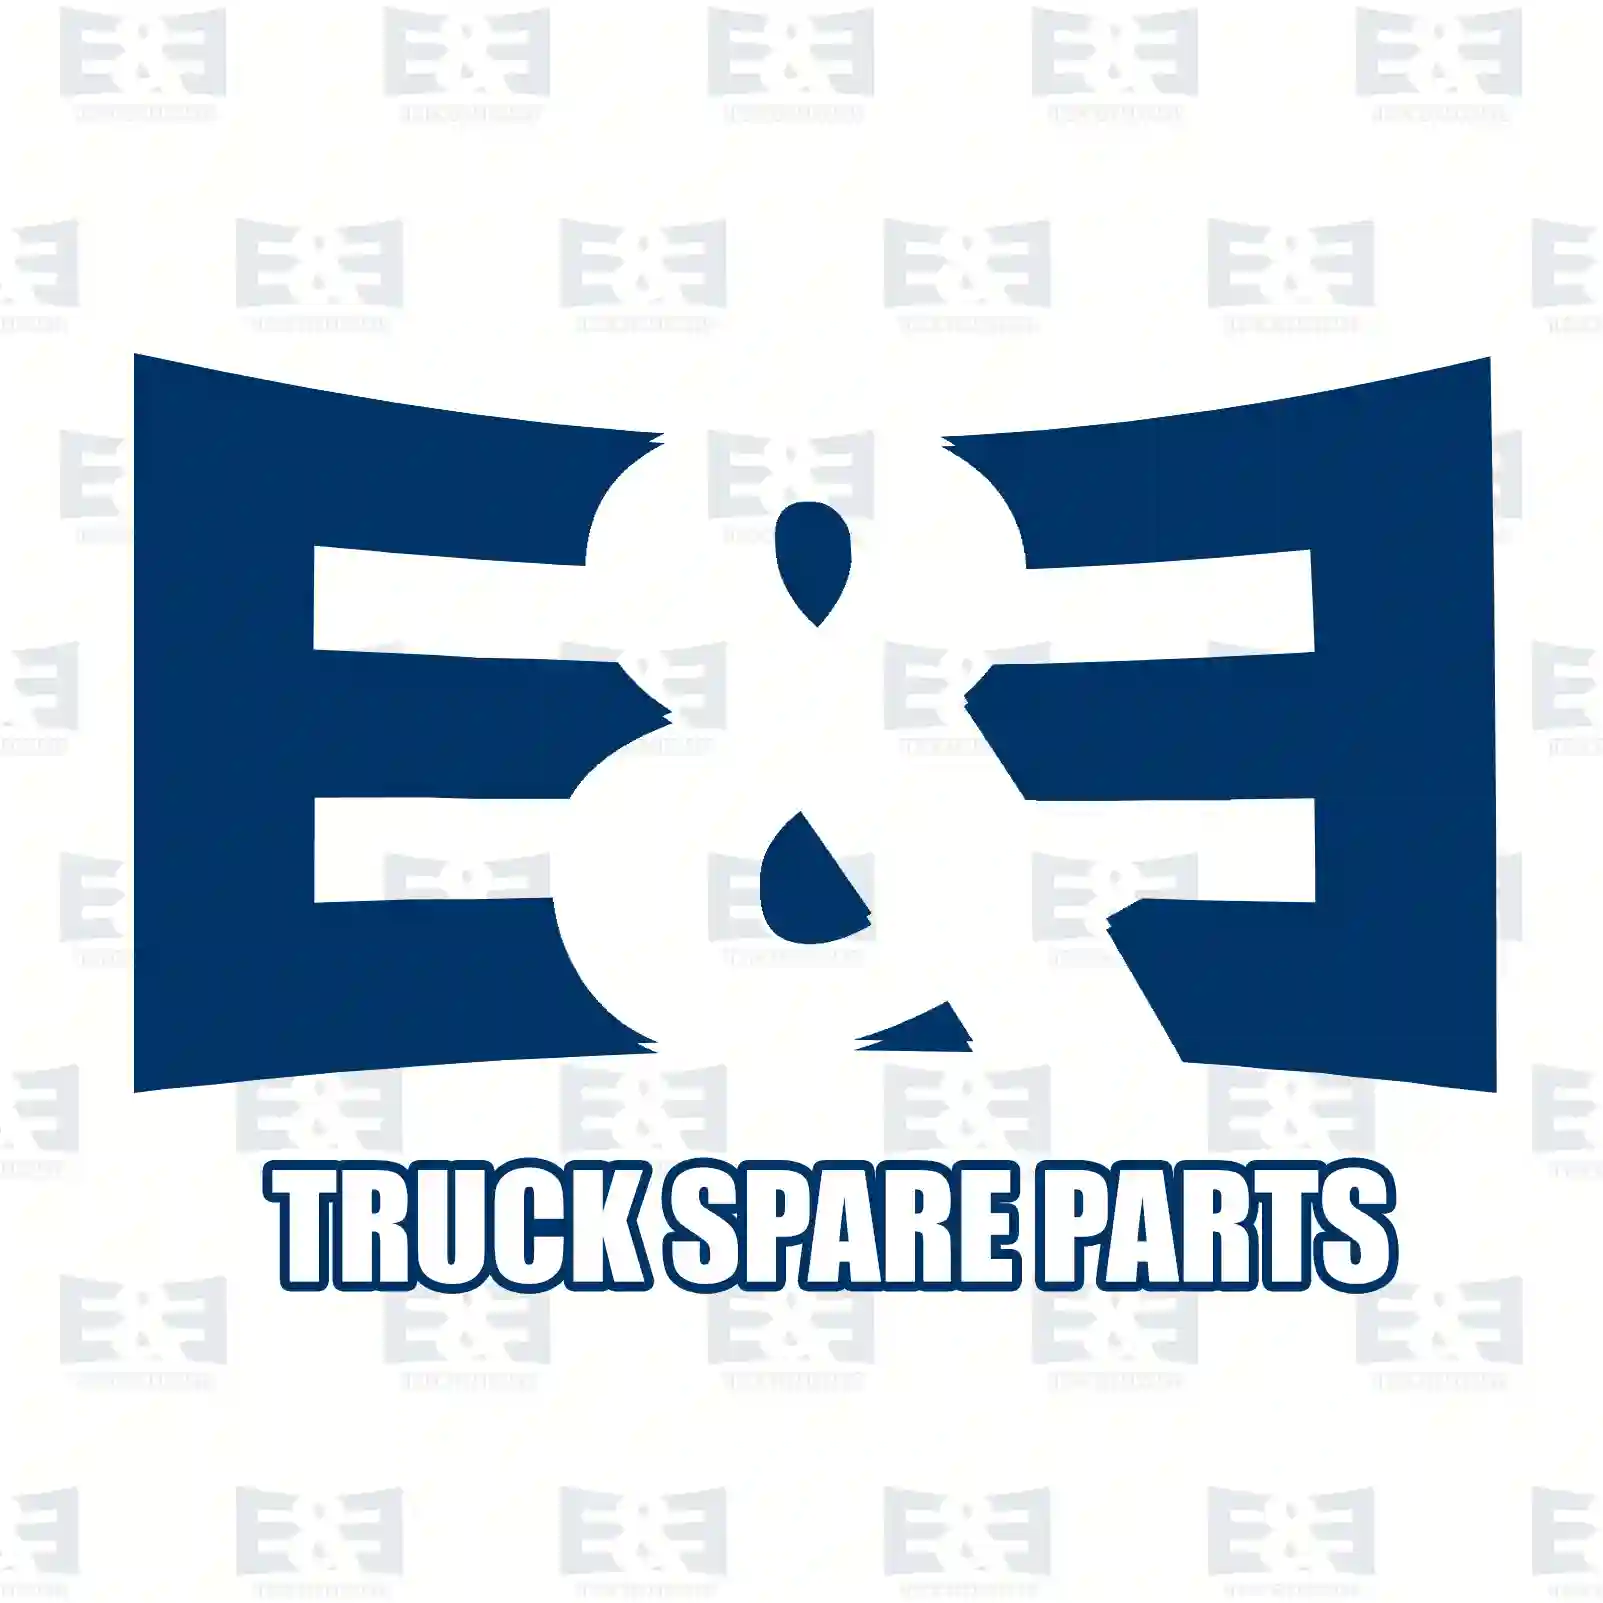  Rocker arm bushing || E&E Truck Spare Parts | Truck Spare Parts, Auotomotive Spare Parts